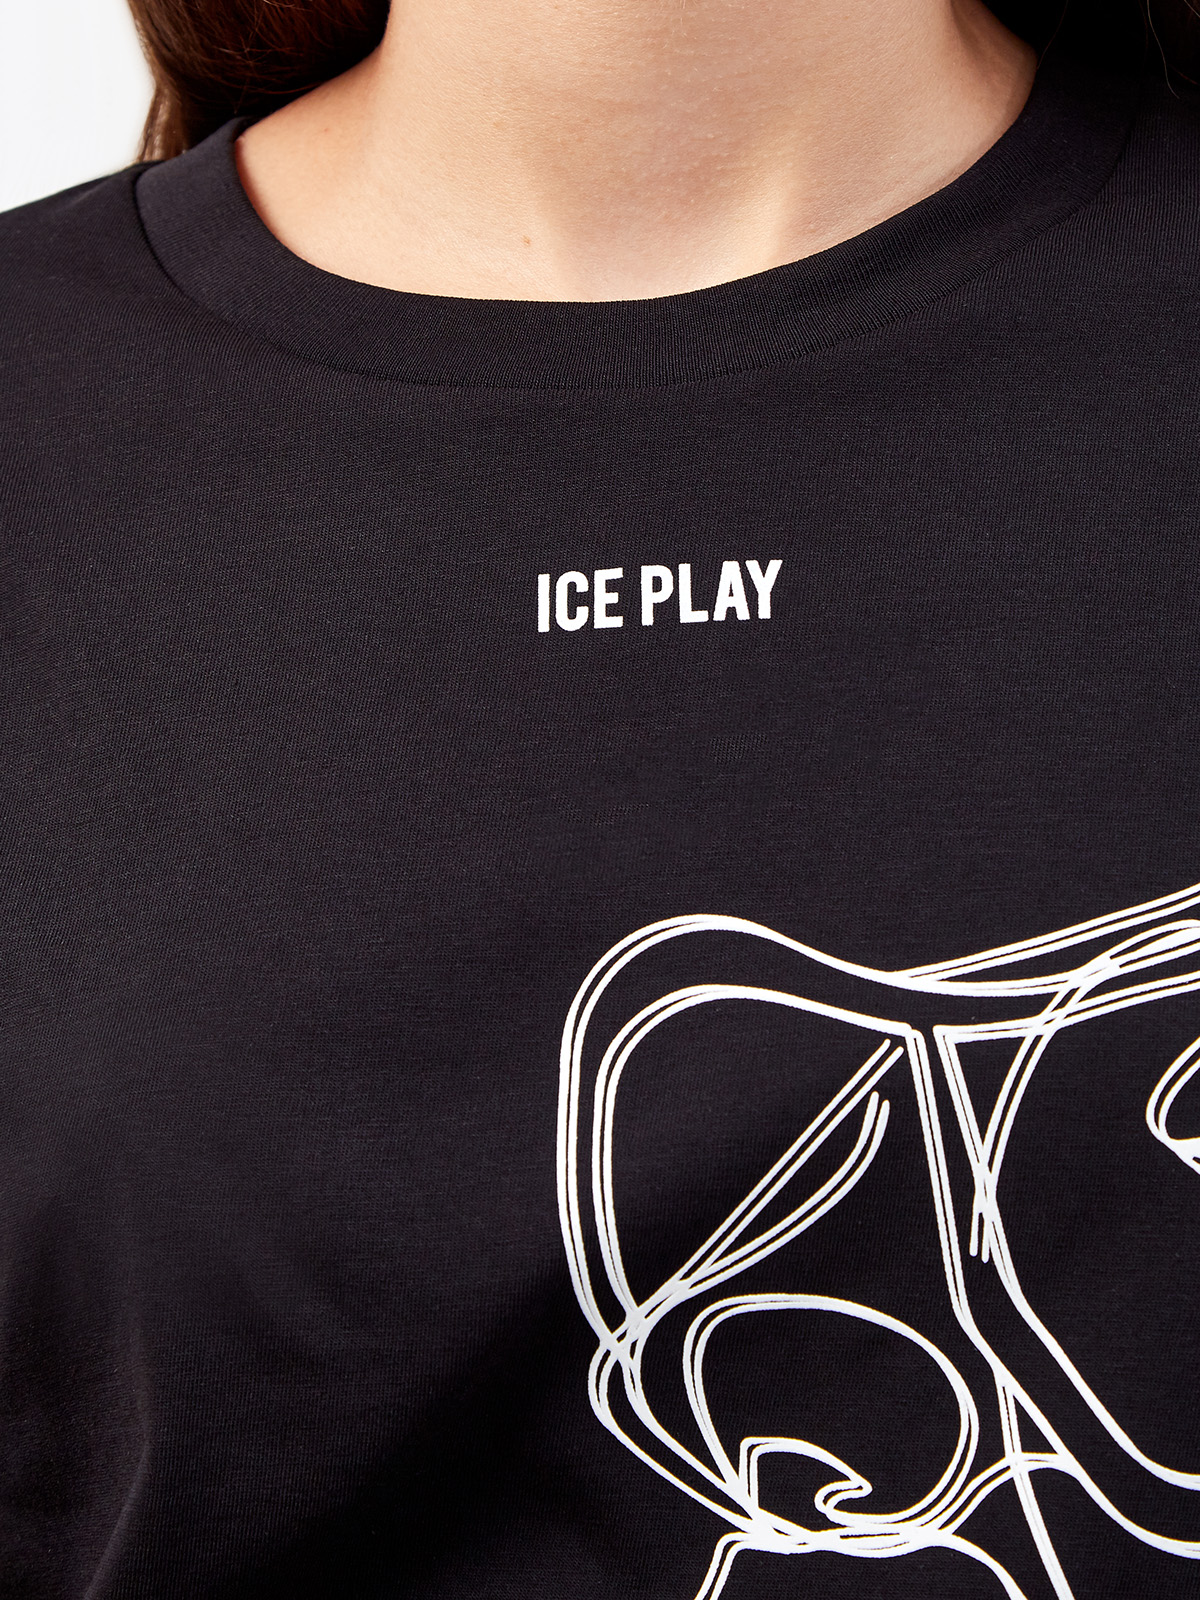 Удлиненная футболка из хлопка с контрастным дизайном ICE PLAY, цвет черный, размер XS;S;M;L - фото 5